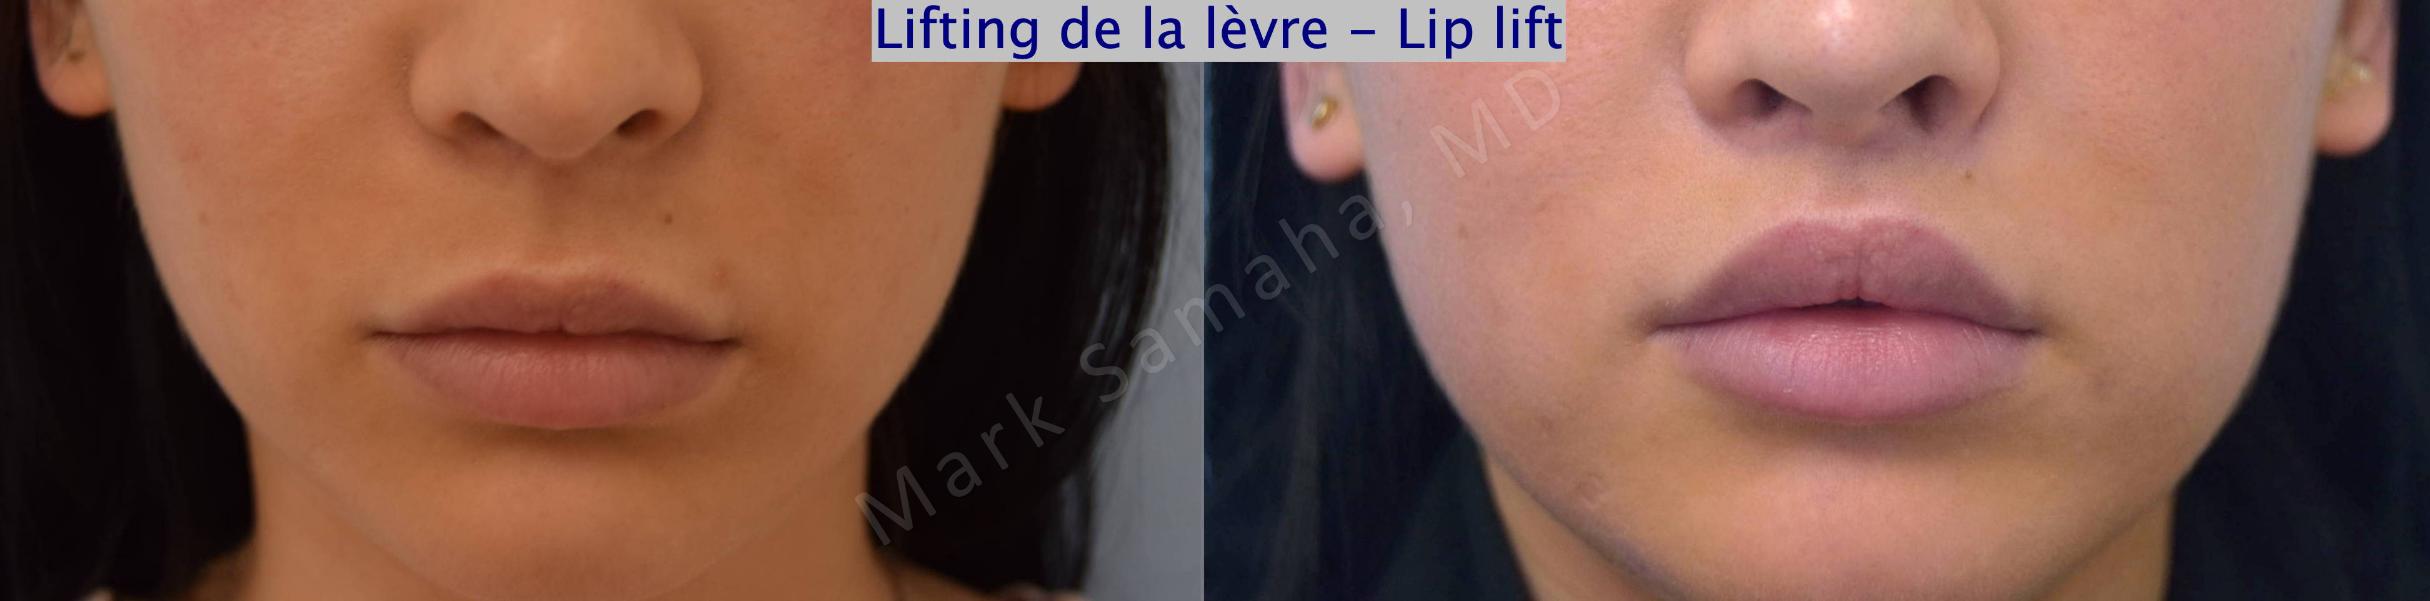 Before & After Lifting de la lèvre supérieure / Lip Lift  Case 122 View #1 View in Mount Royal, QC